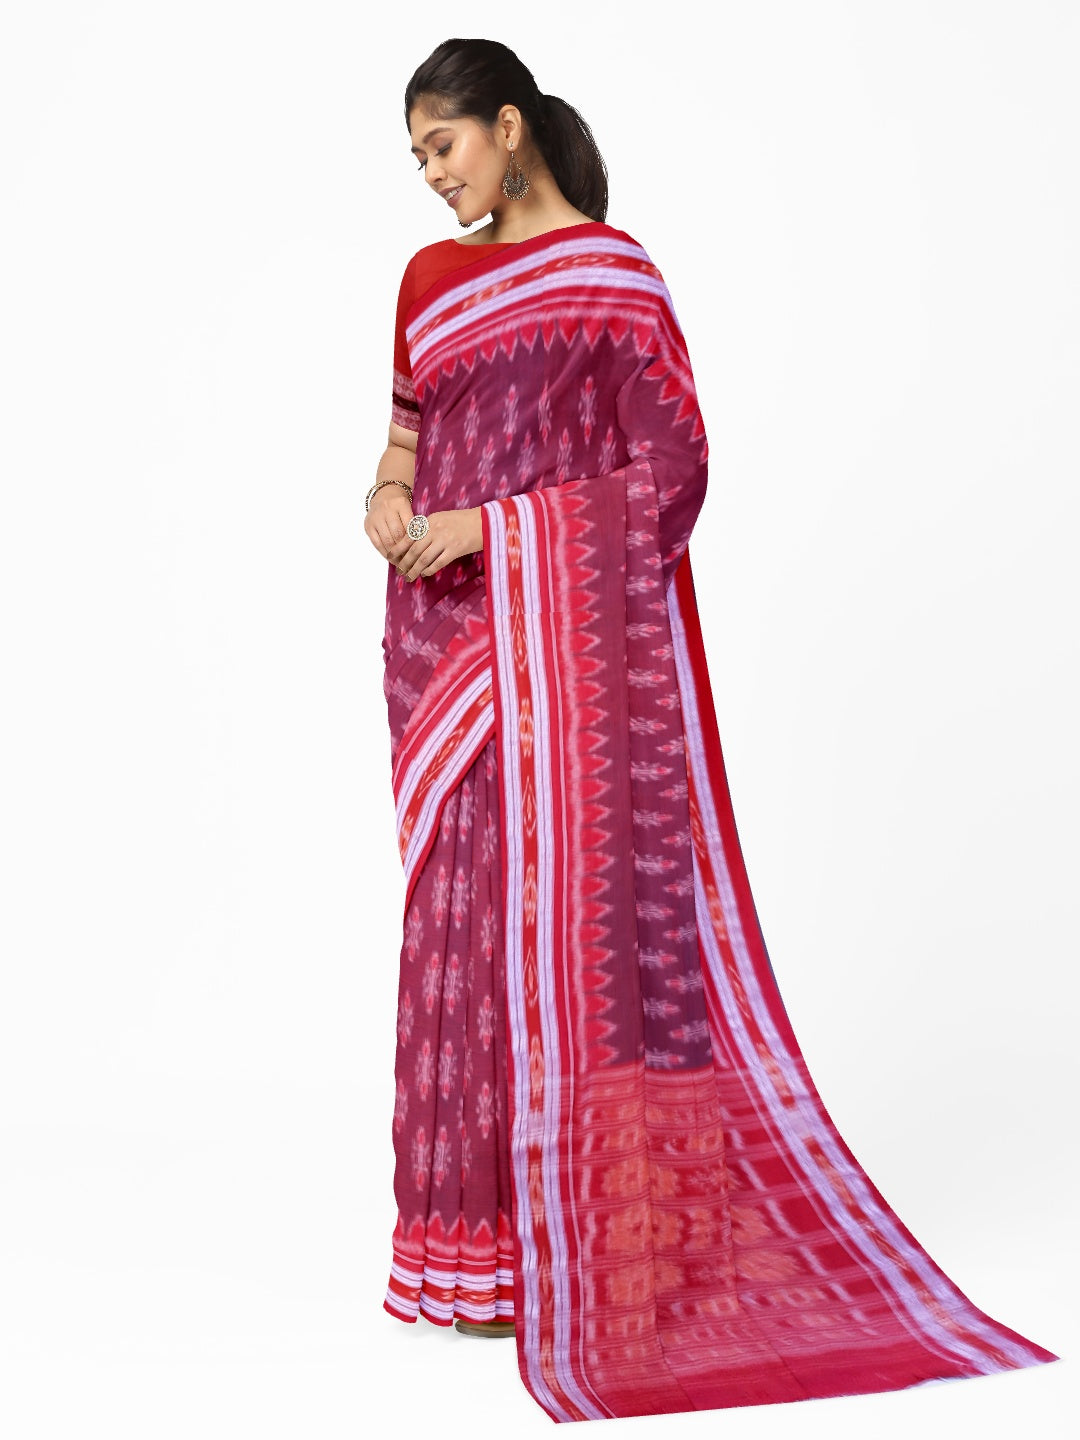 Brown and Red Cotton Odisha Ikat saree  with mix match cotton ikat blouse